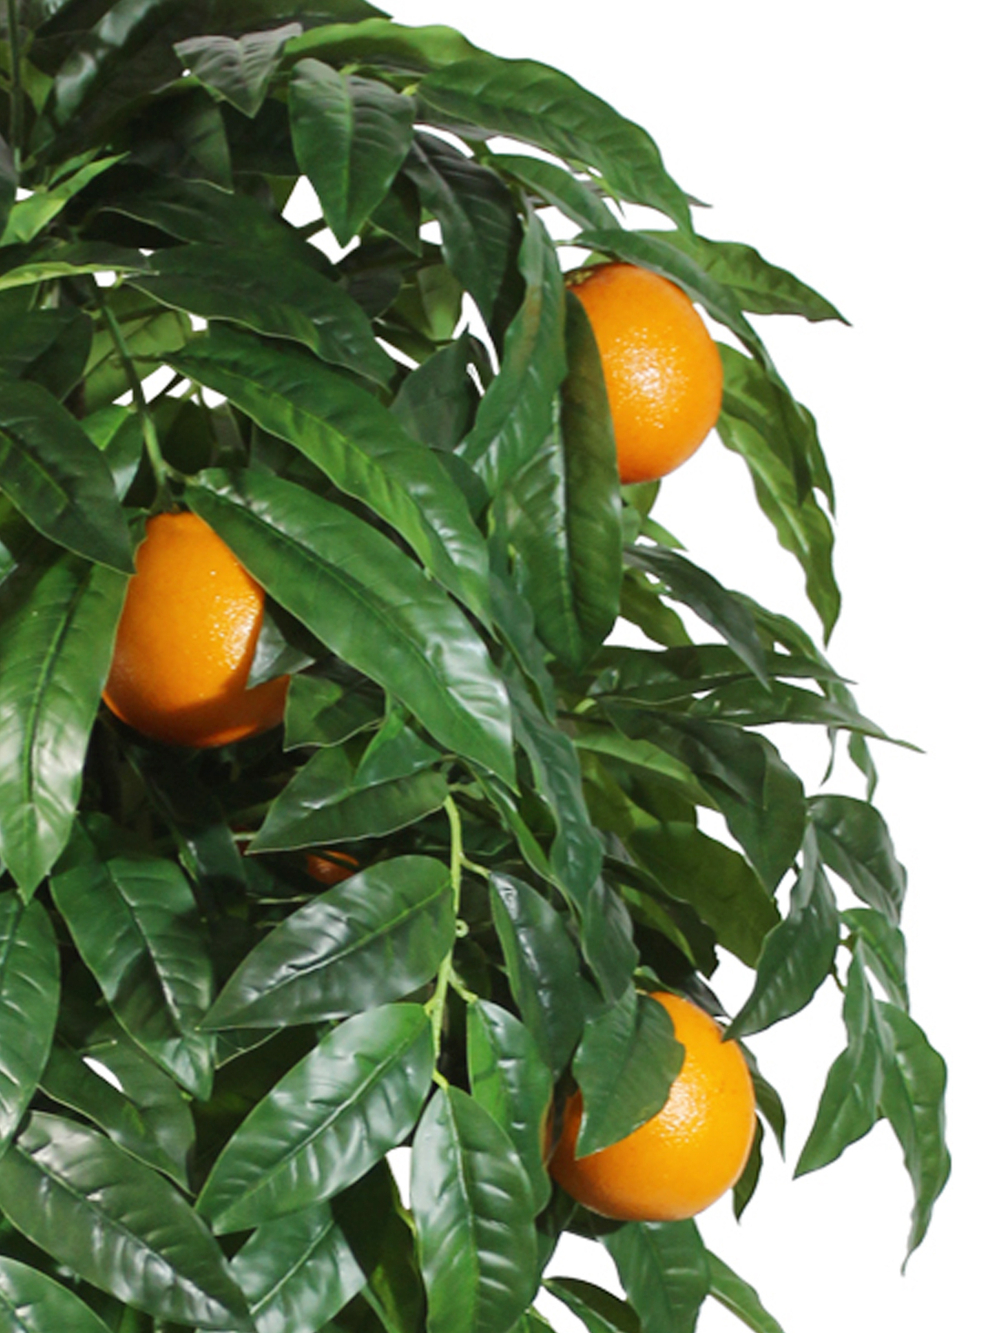 Искусственное дерево Апельсин 150см в кашпо